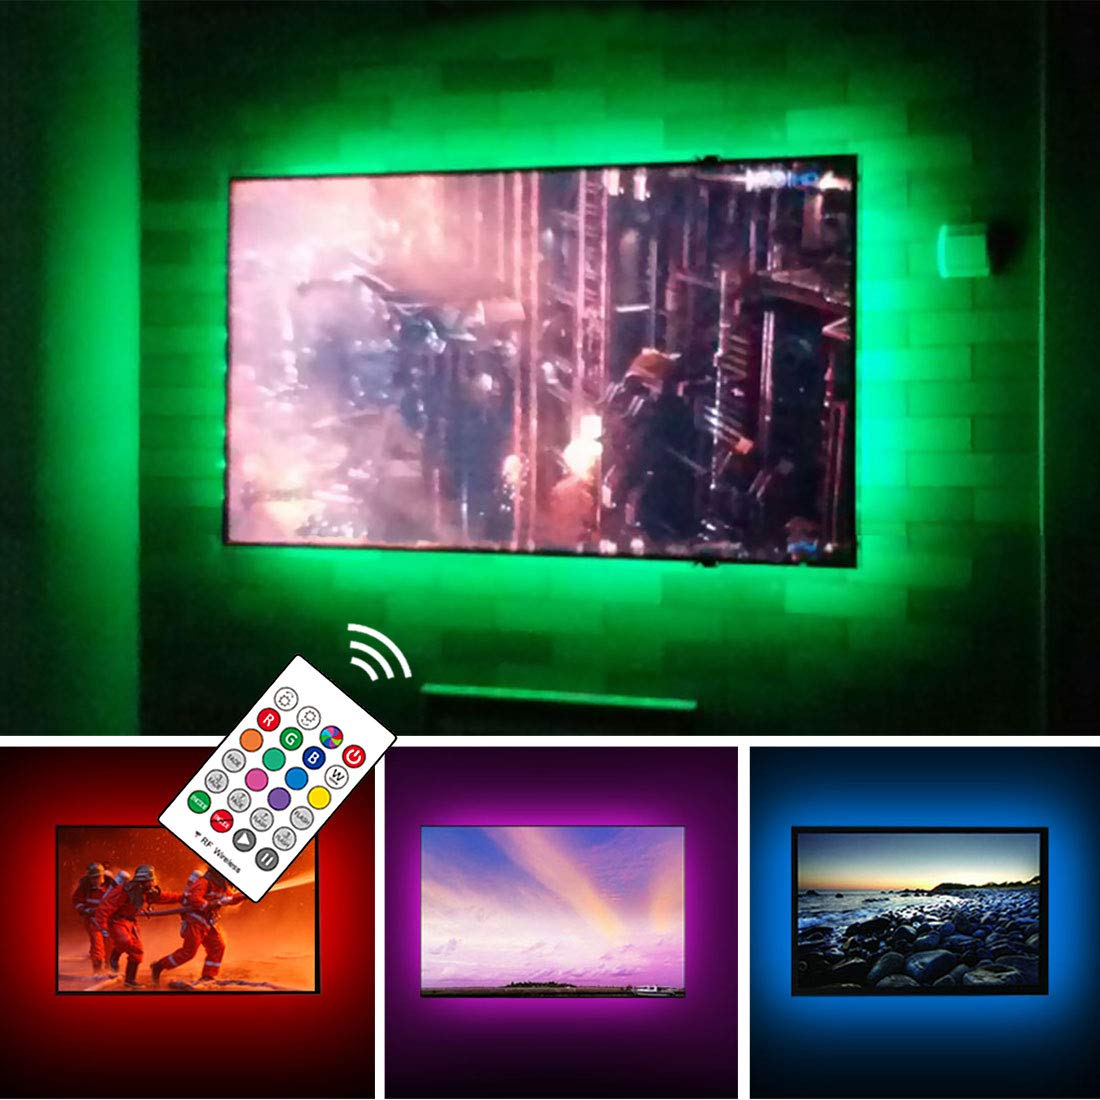 USB TV Backlight Kit là một sản phẩm thú vị giúp tăng ánh sáng cho TV của bạn. Hình ảnh sẽ giúp bạn hiểu rõ hơn về sản phẩm và cách sử dụng để tạo nên không gian trang trí ấn tượng.